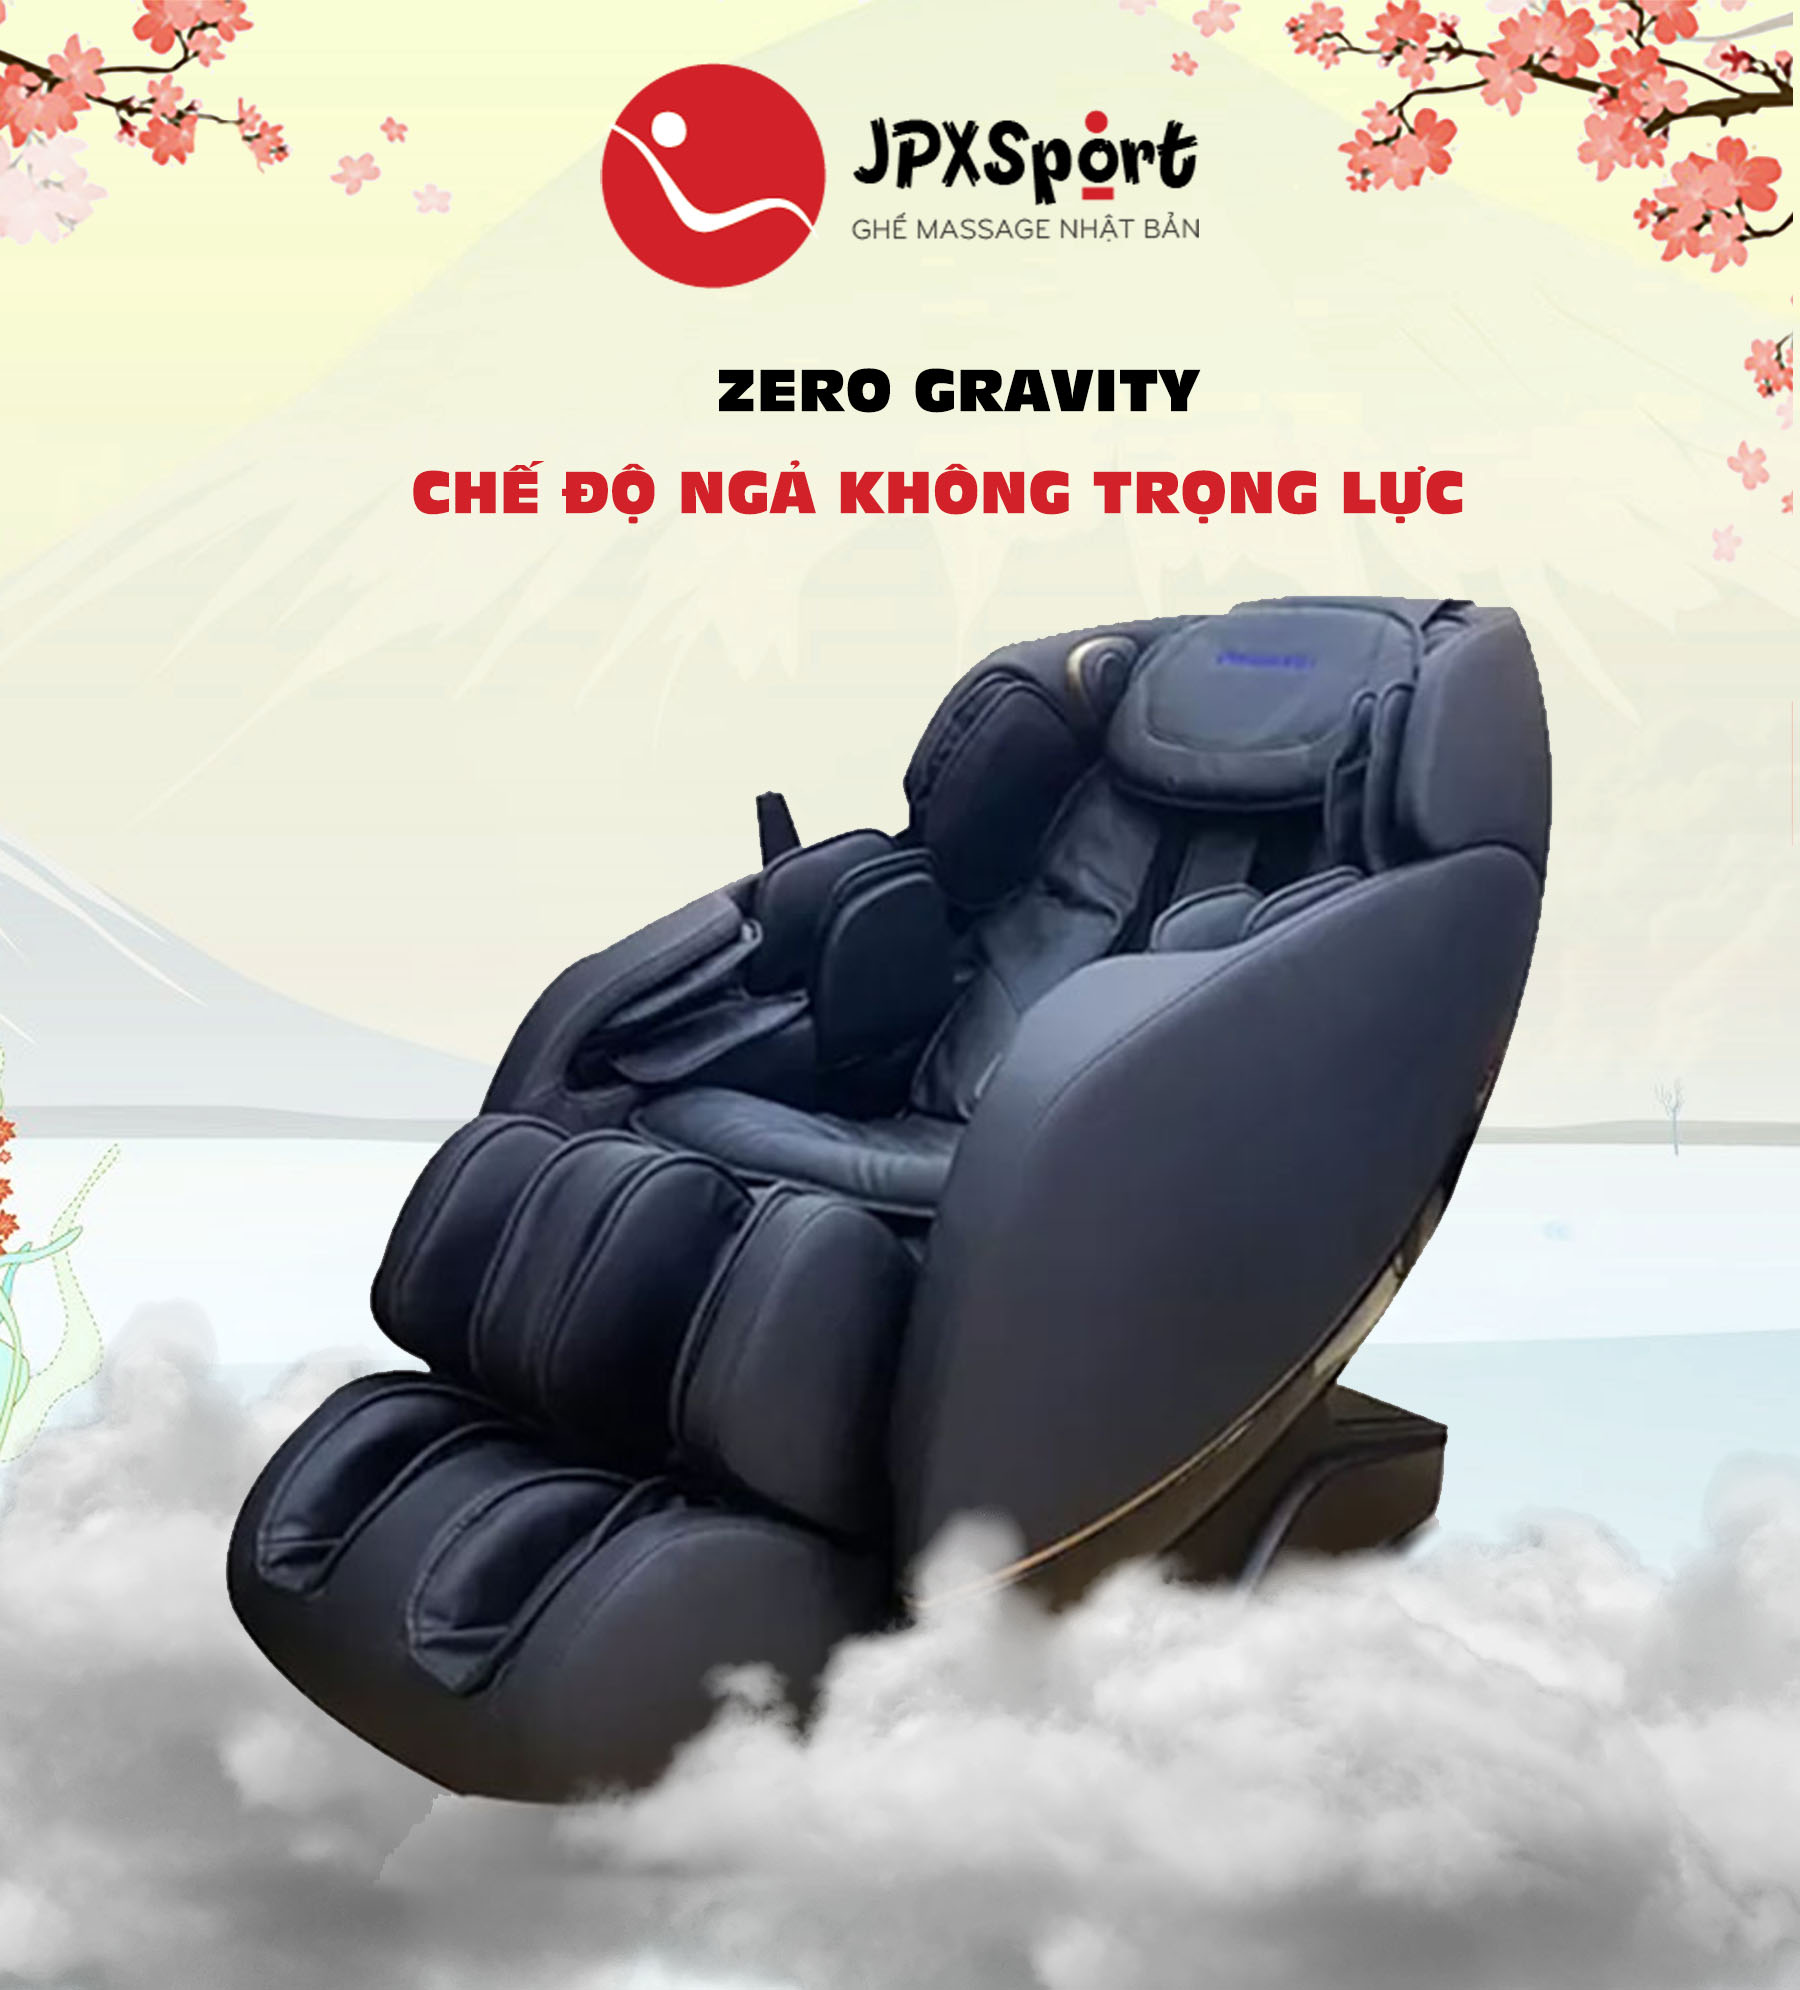 Thiết kế của ghế massage panasonic EP-MA73TF